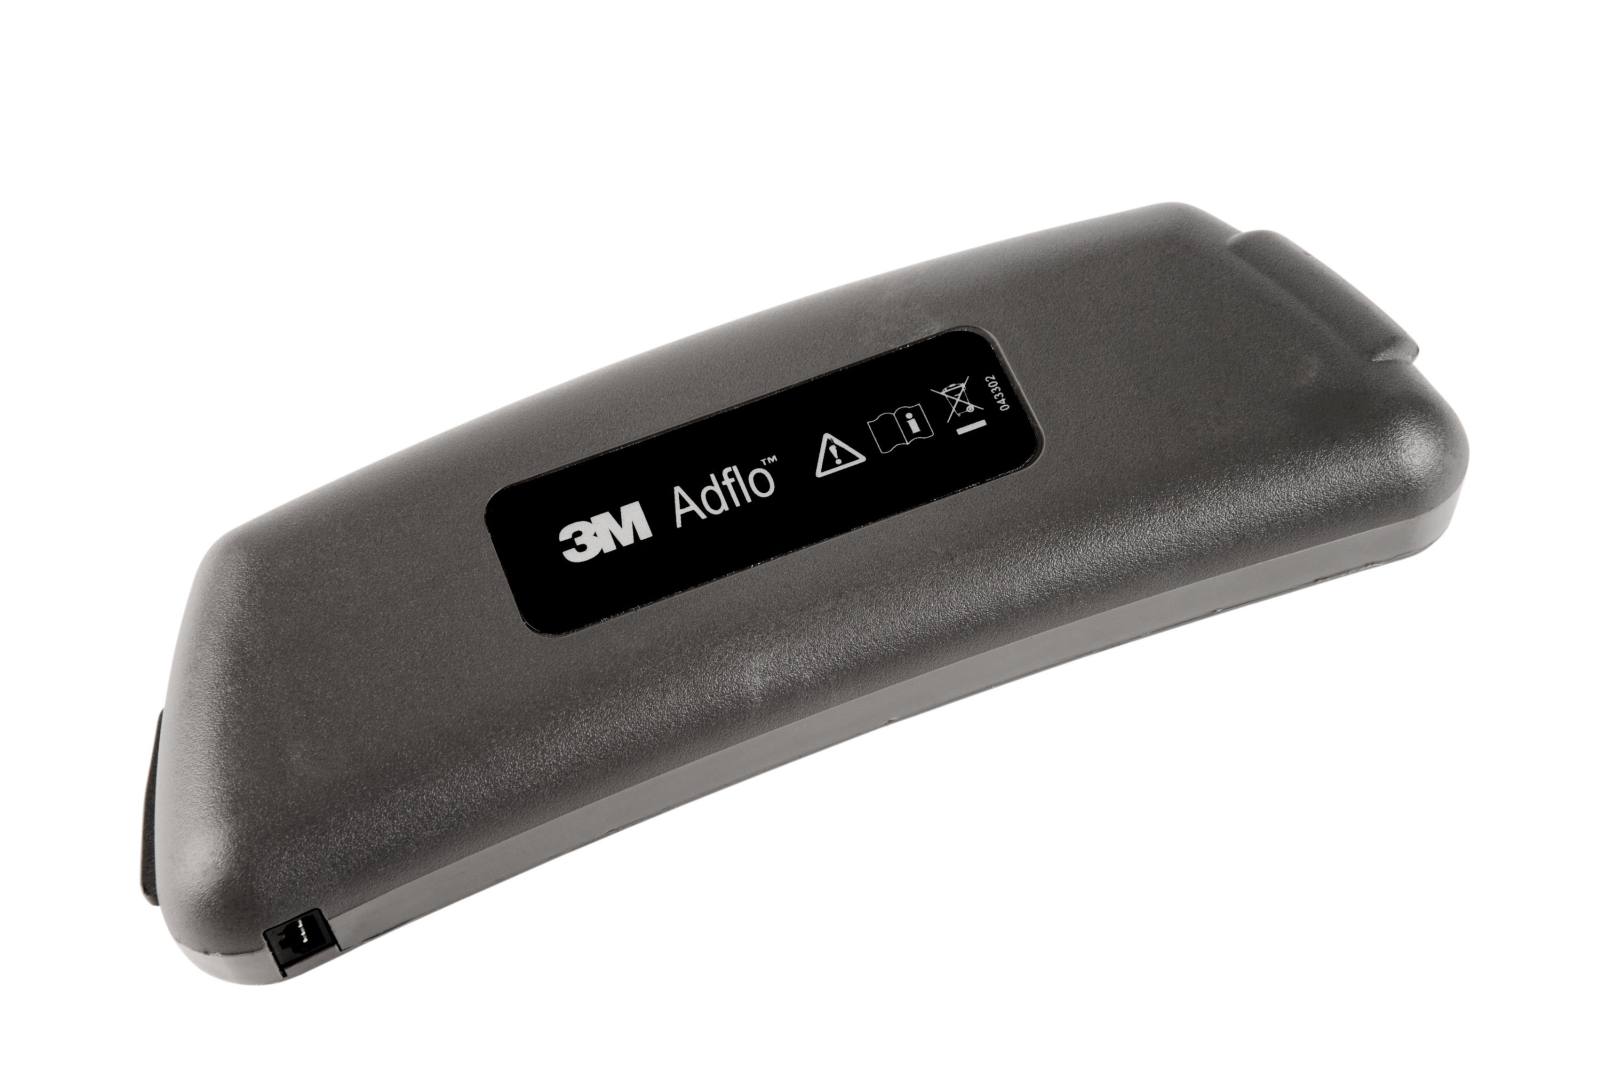 Batterie standard 3M Adflo Li-Ion, durée de vie de la batterie jusqu'à 8 heures #837630